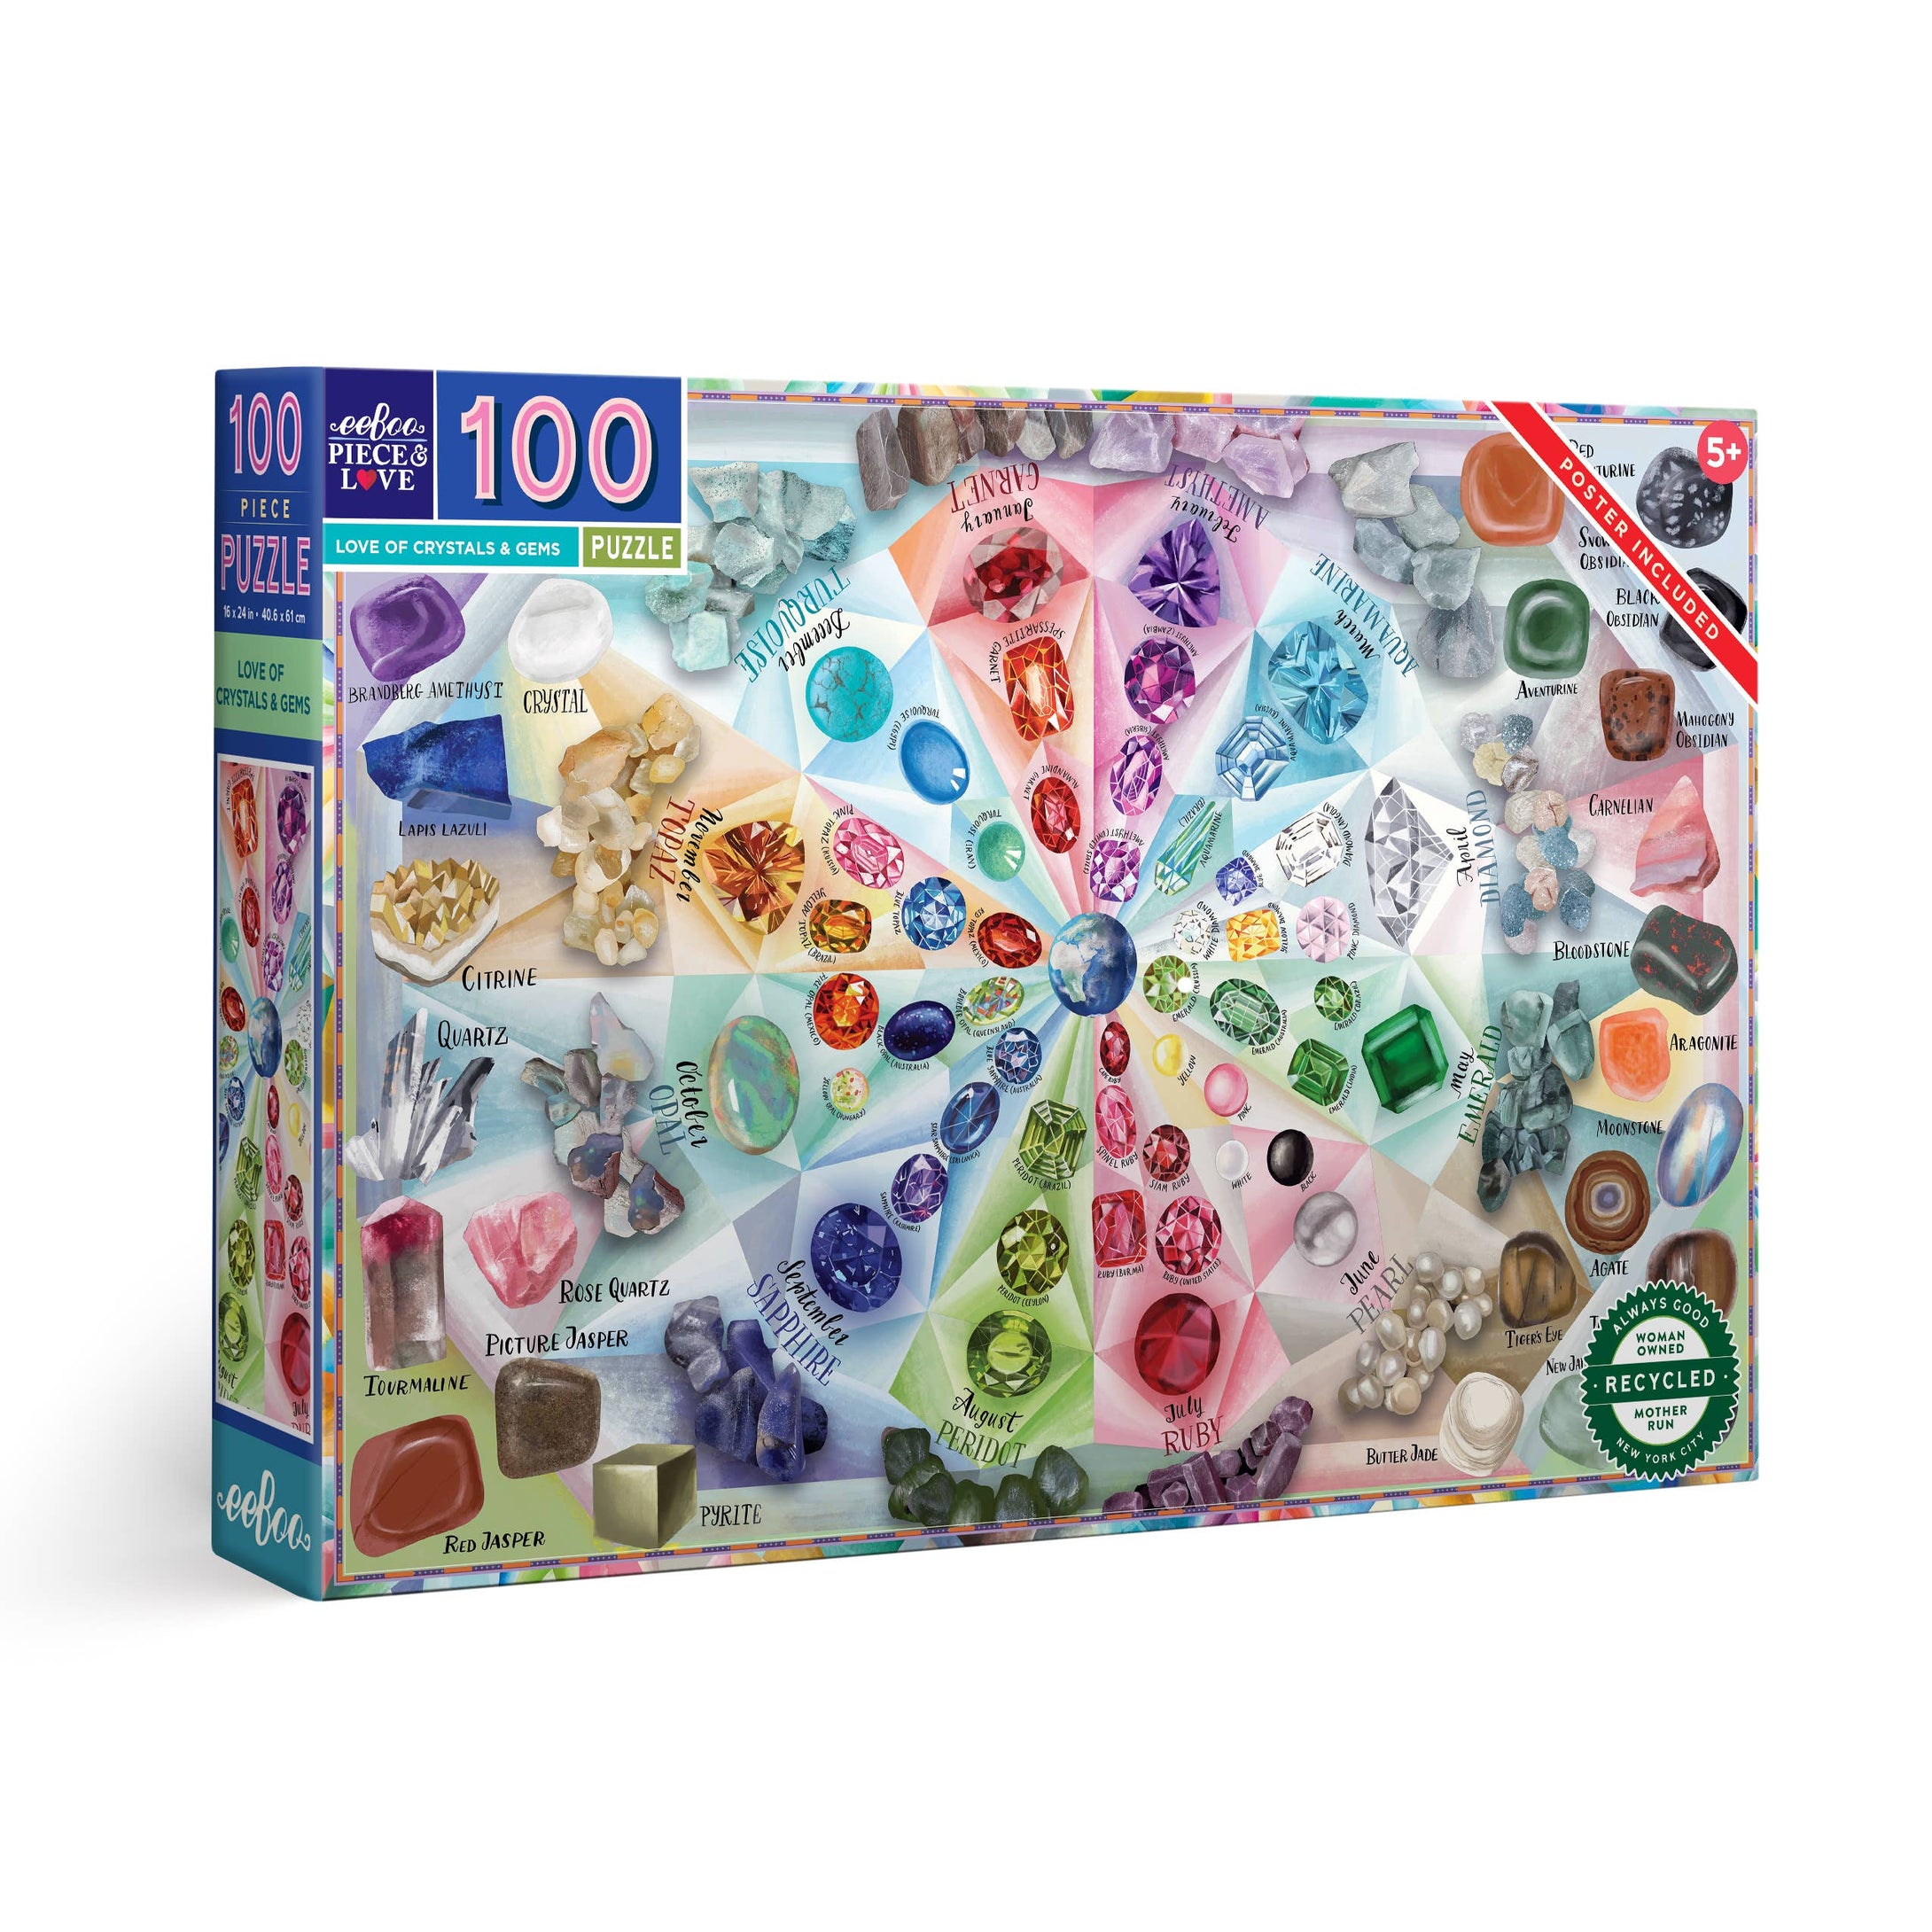 eeBoo - Love of Crystals & Gems 100 Piece Puzzle